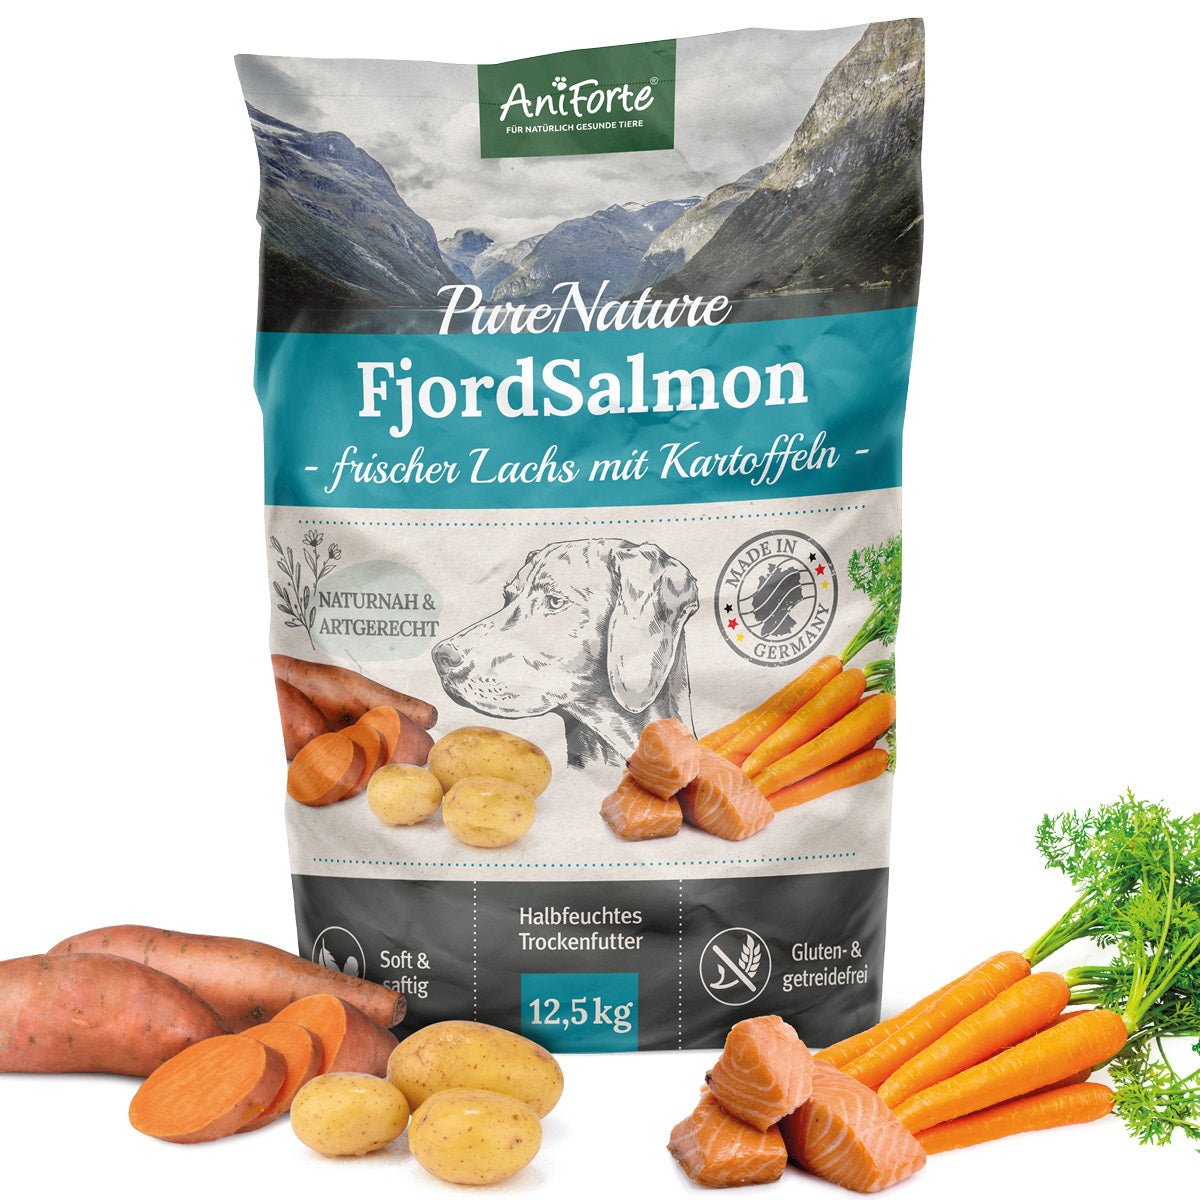 PureNature FjordSalmon – frischer Lachs mit Kartoffeln - AniForte